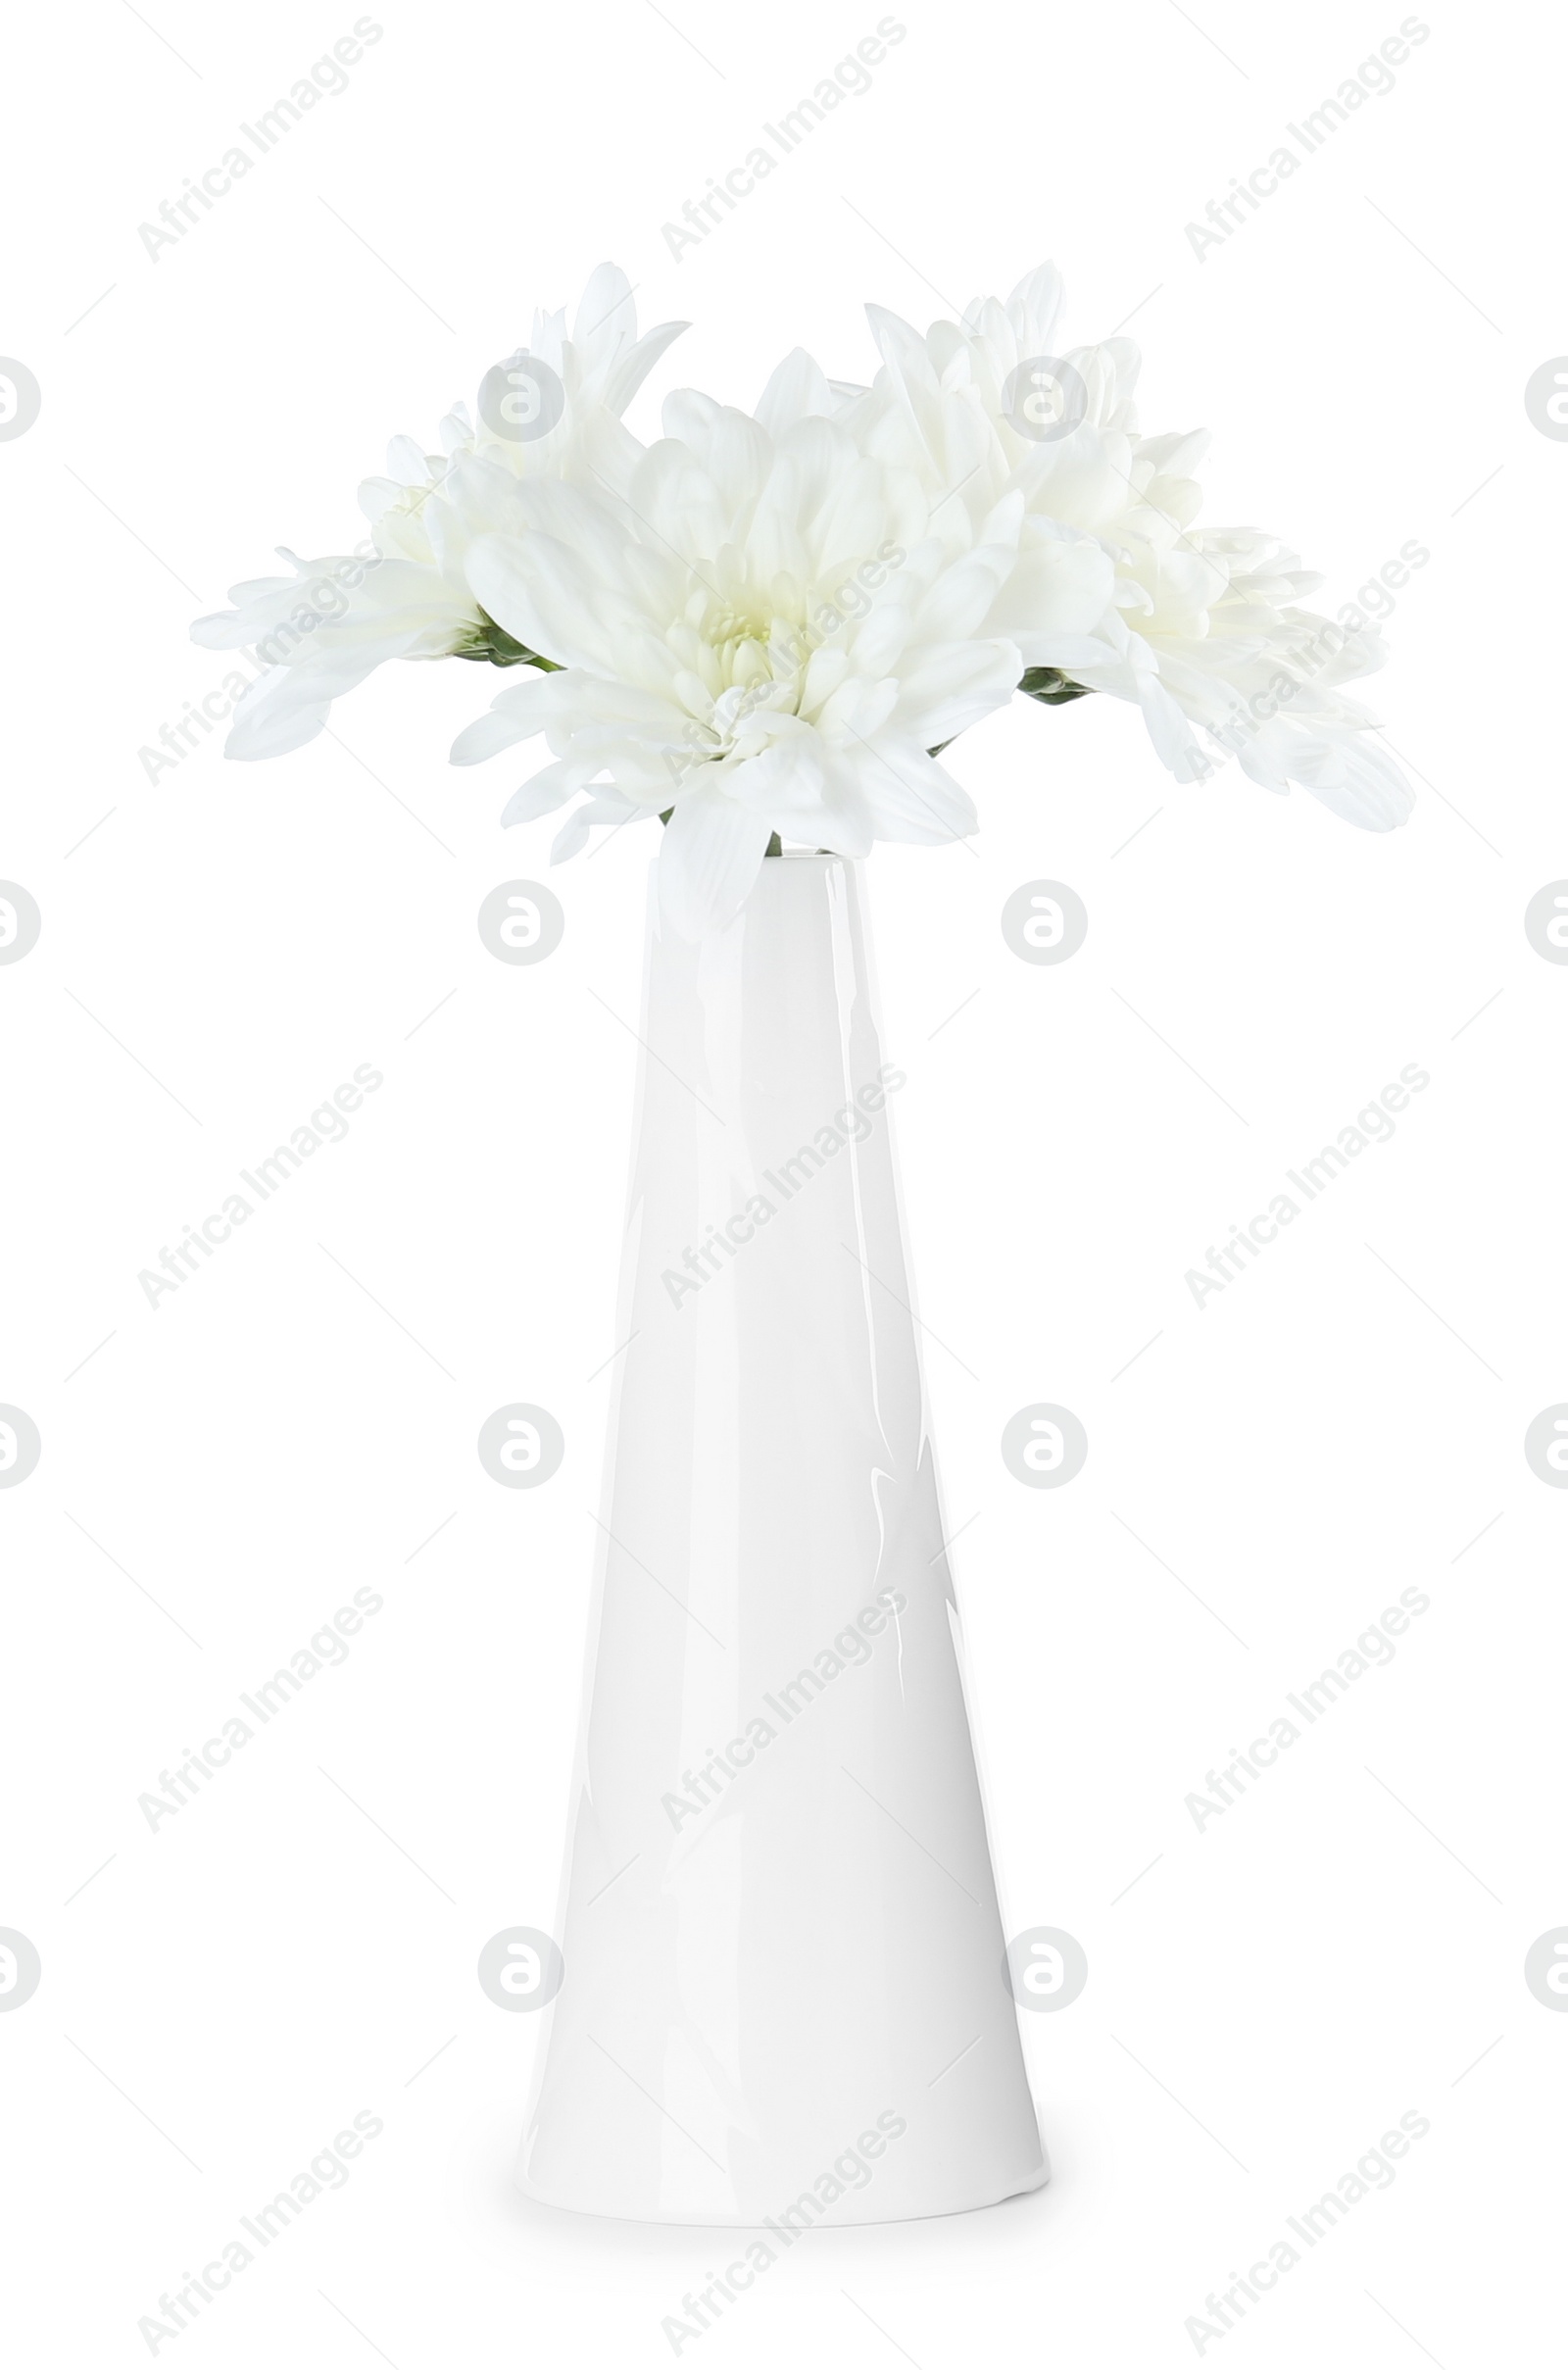 Photo of Stylish ceramic vase with flowers isolated on white